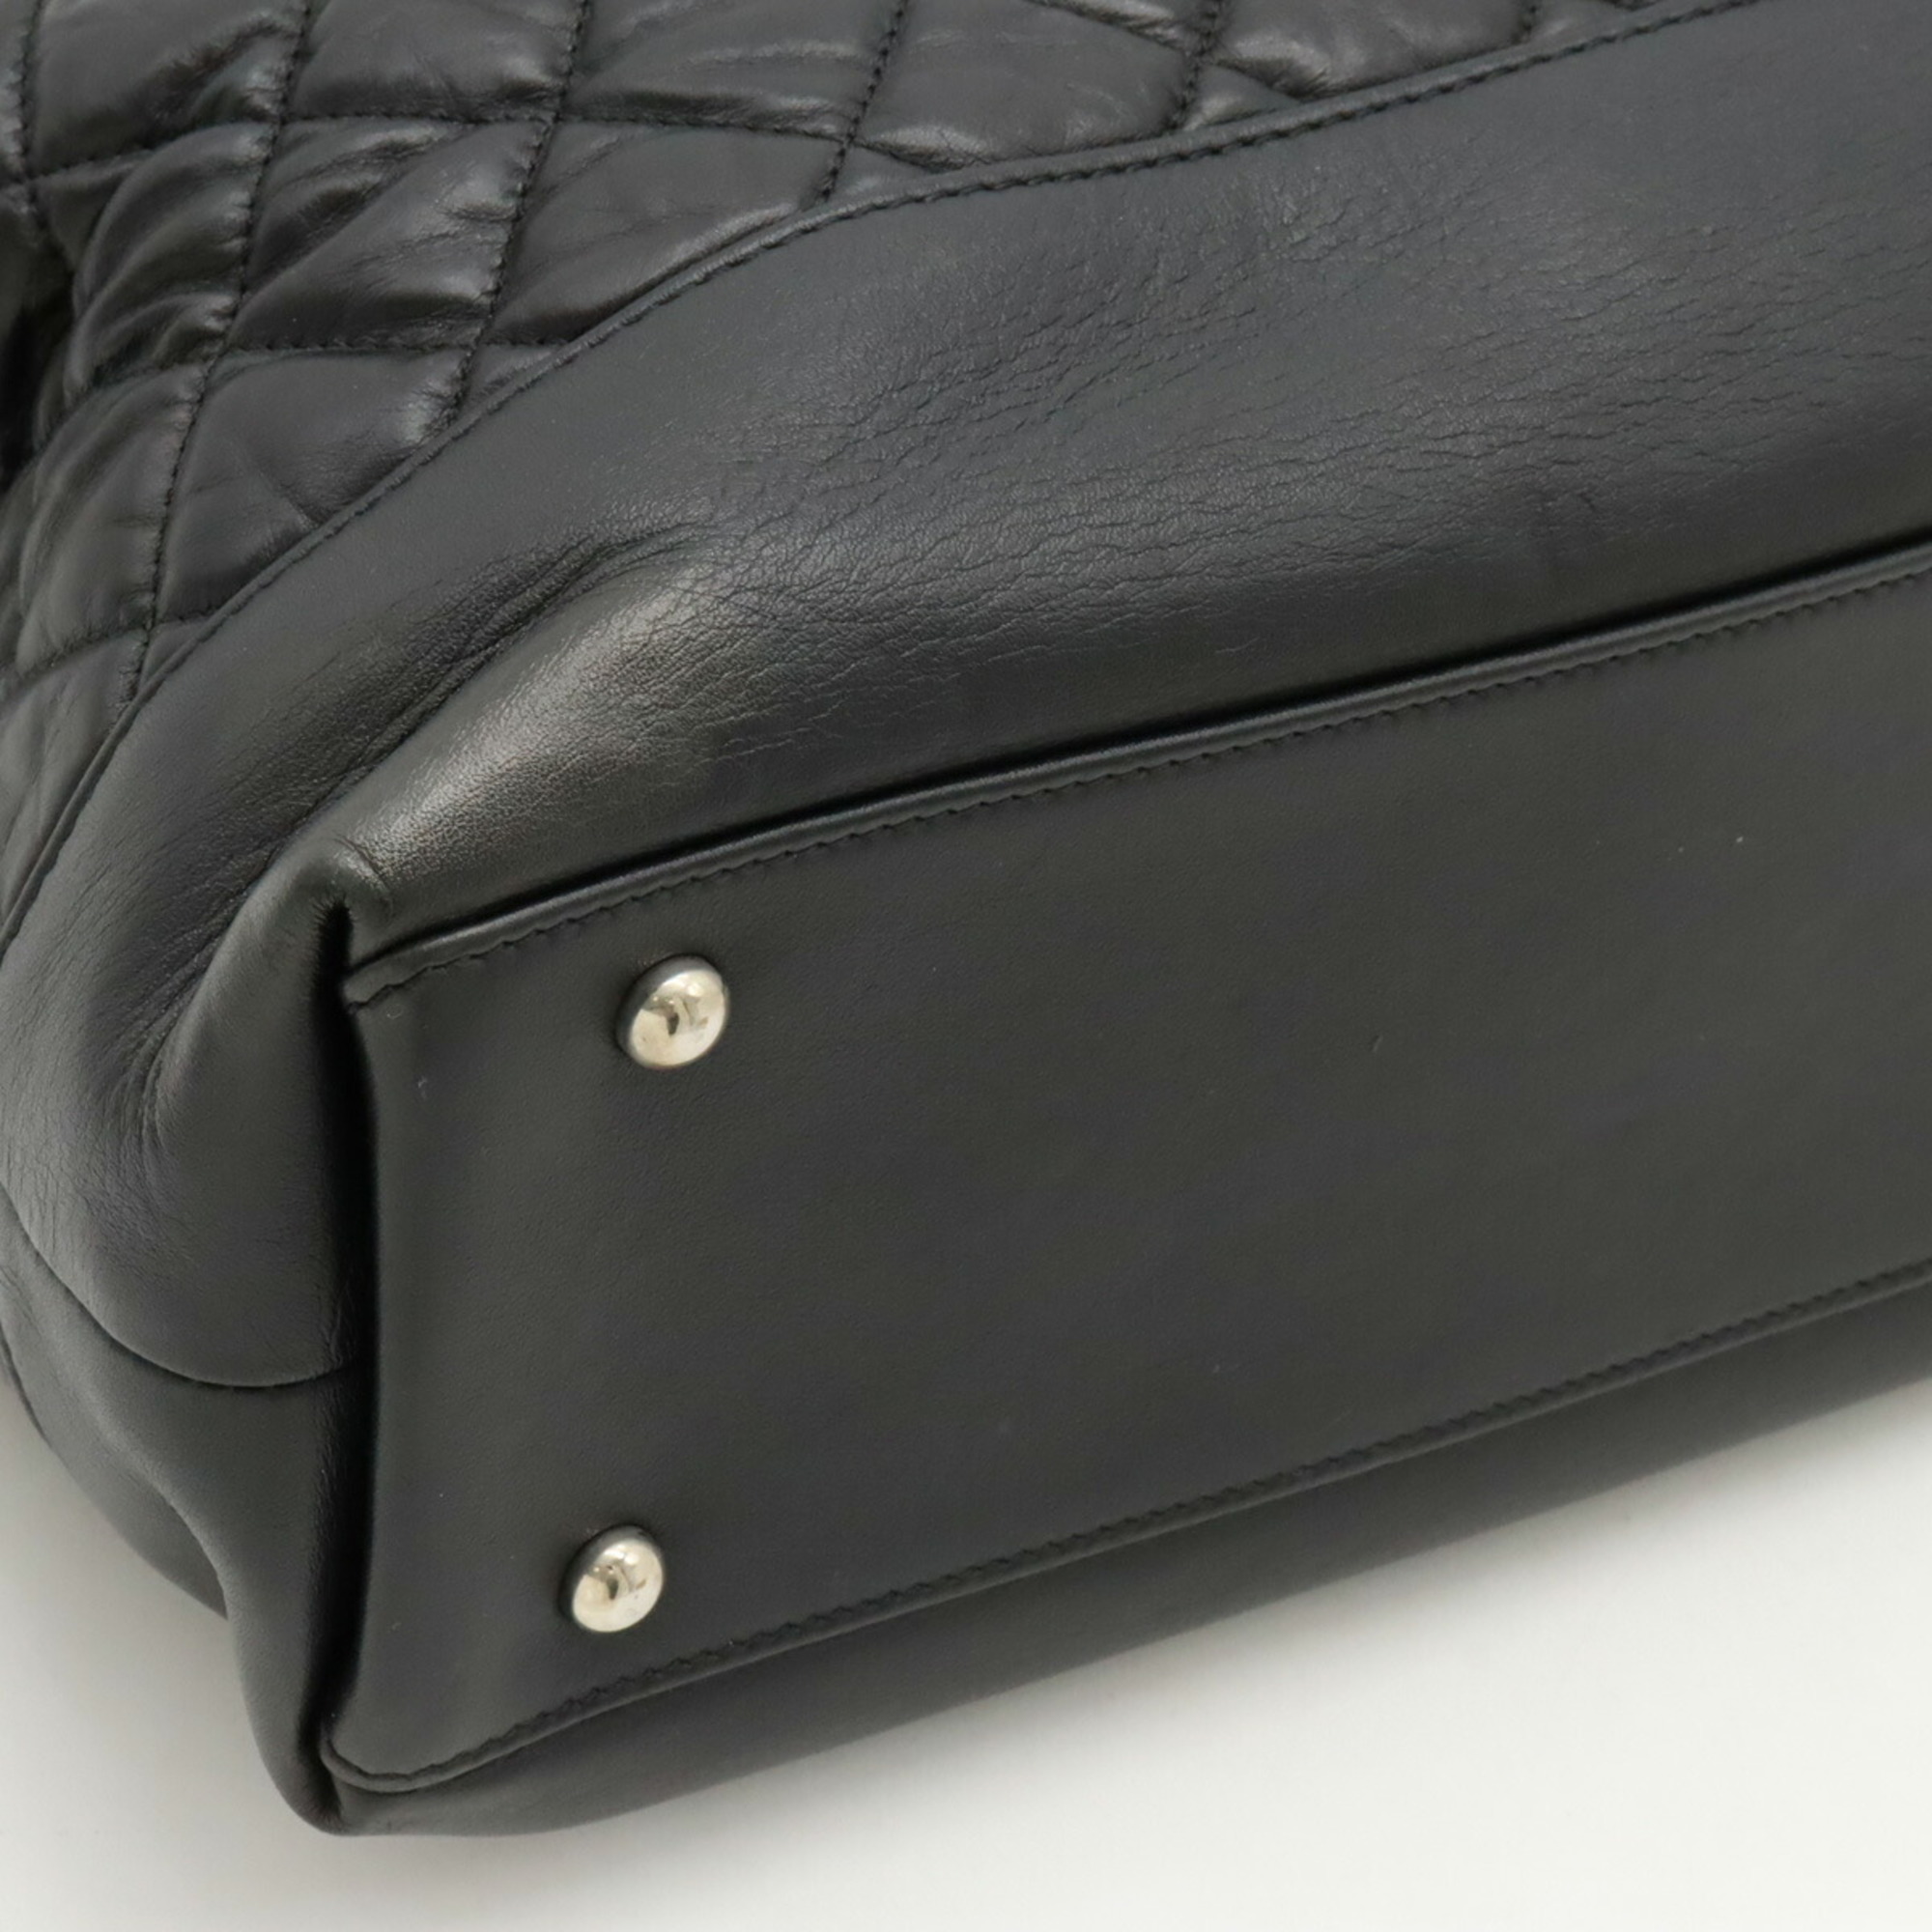 CHANEL Coco Mark Matelasse Portobello Tote Bag Chain Shoulder Leather Black